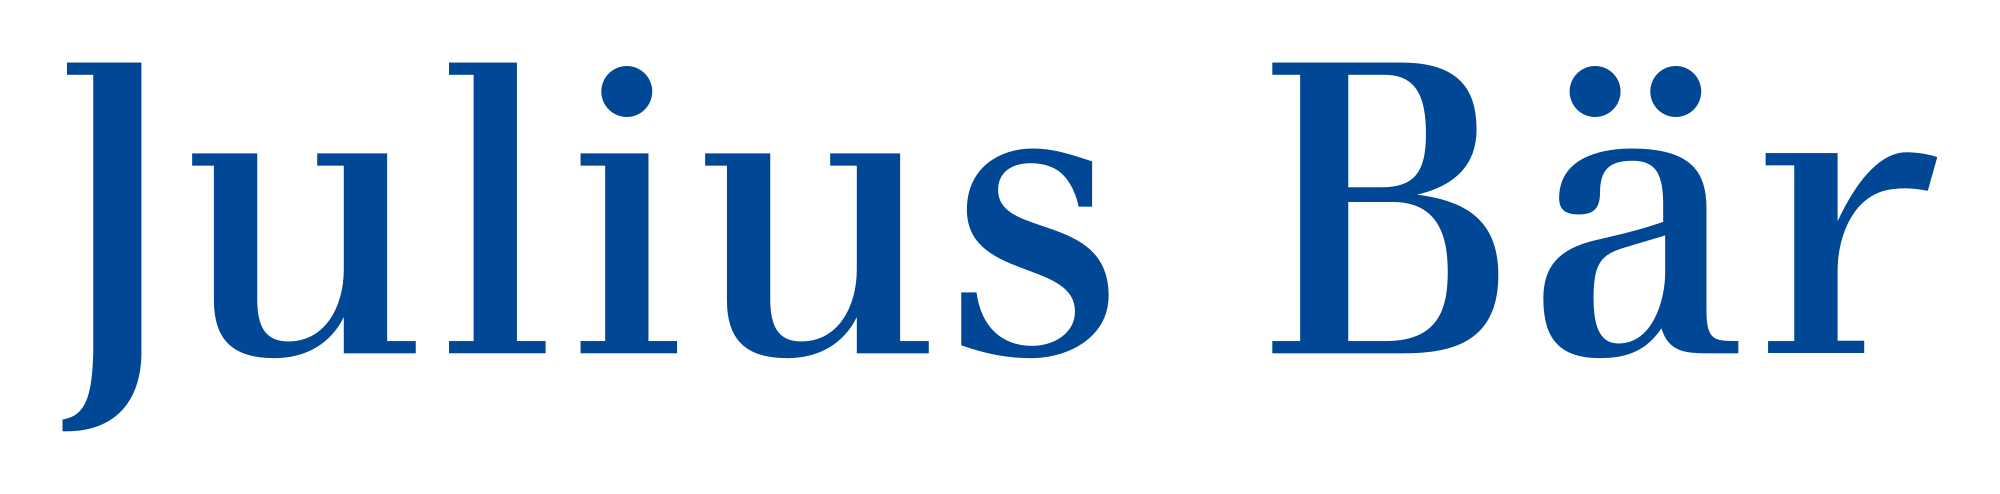 Julius Bär Brand Logo